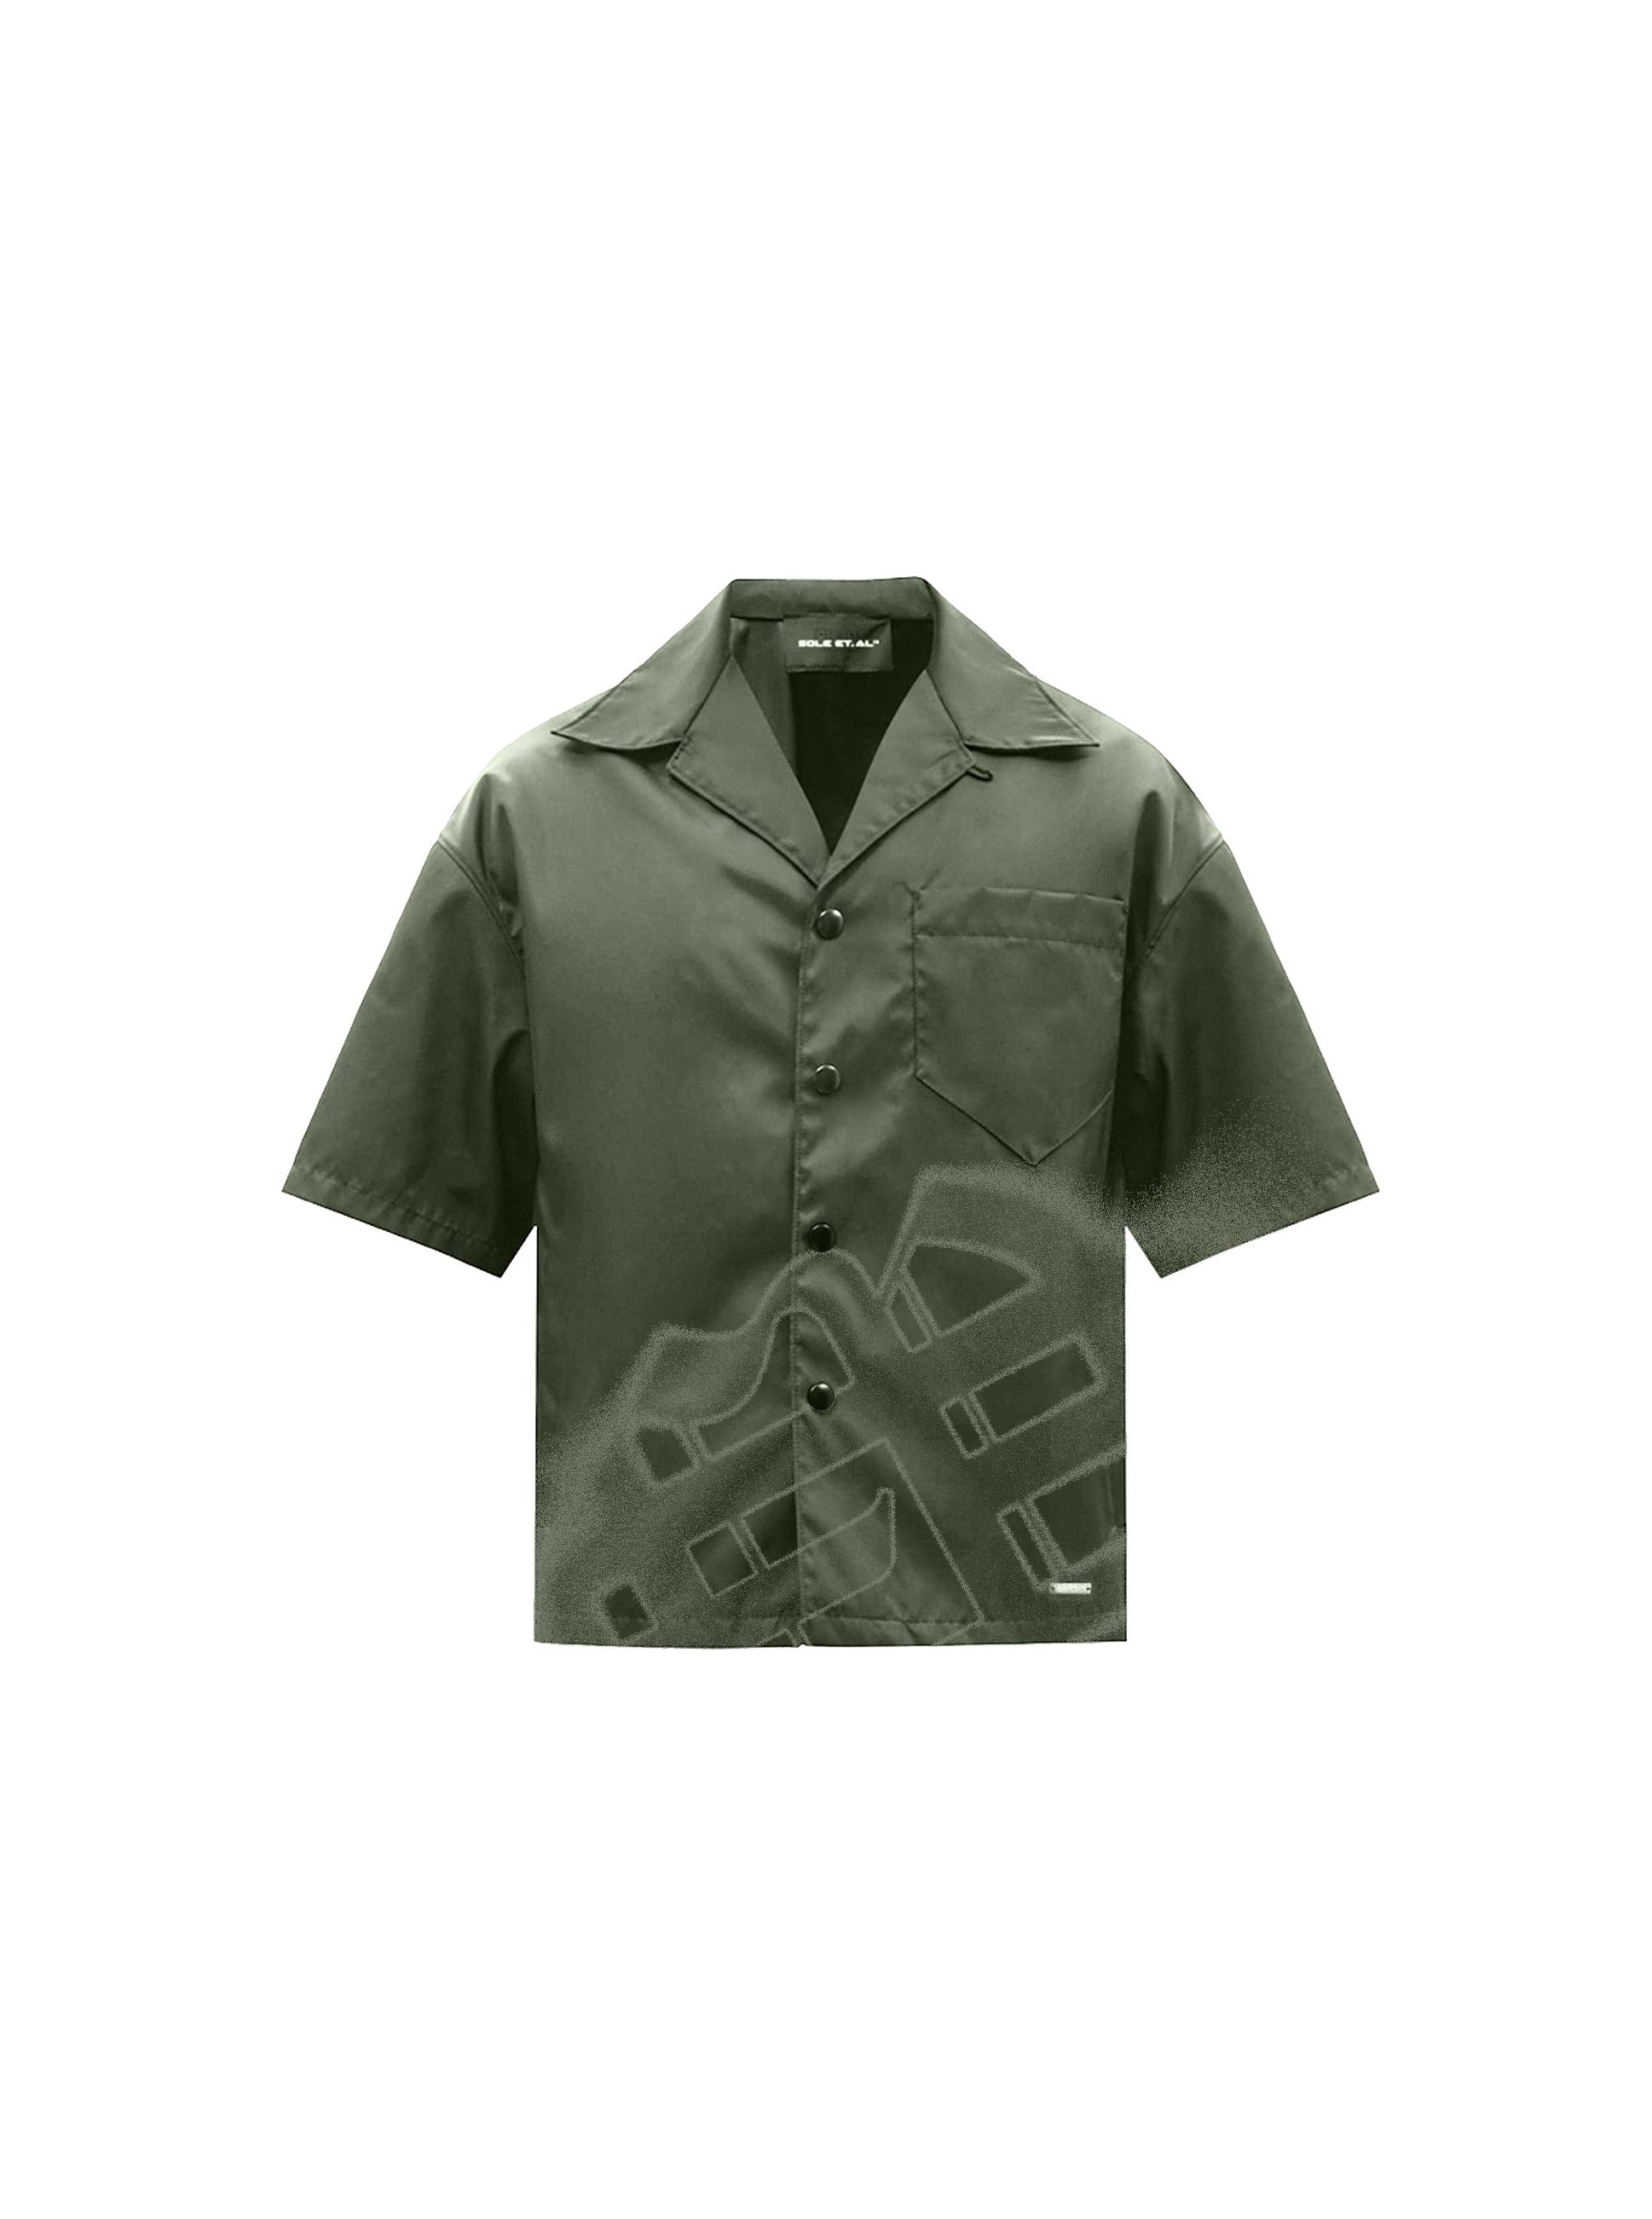 Sole et. Camicia in seta Al Revølutiøn : Verde militare